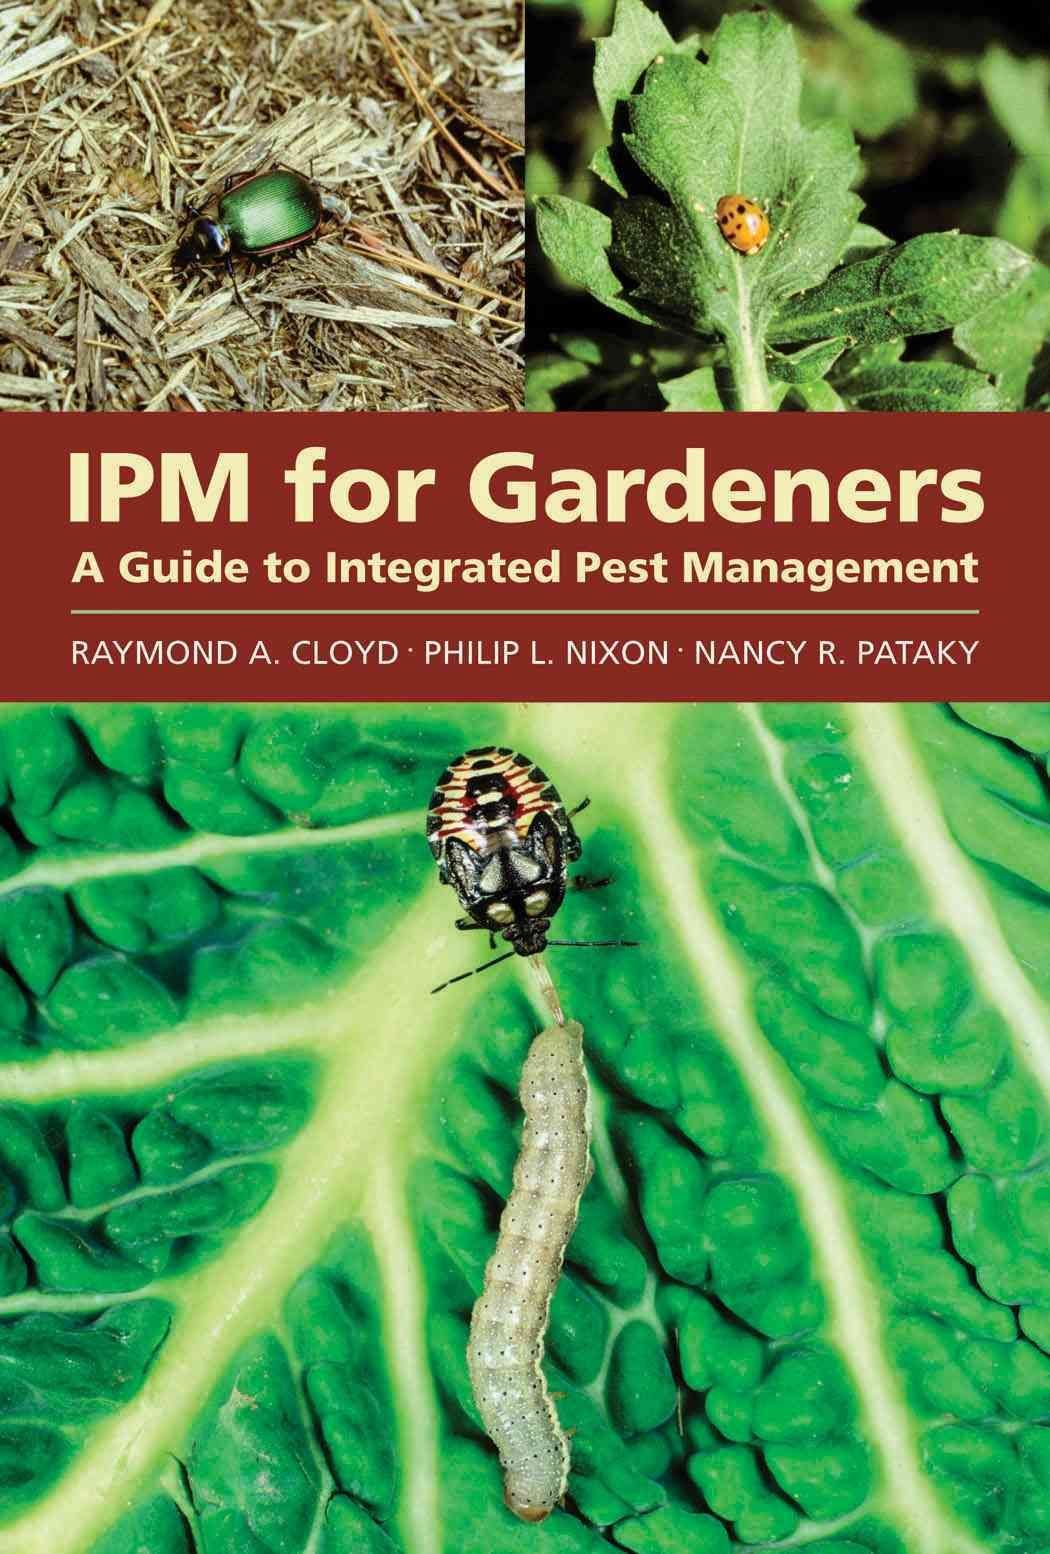 IPM for Gardeners